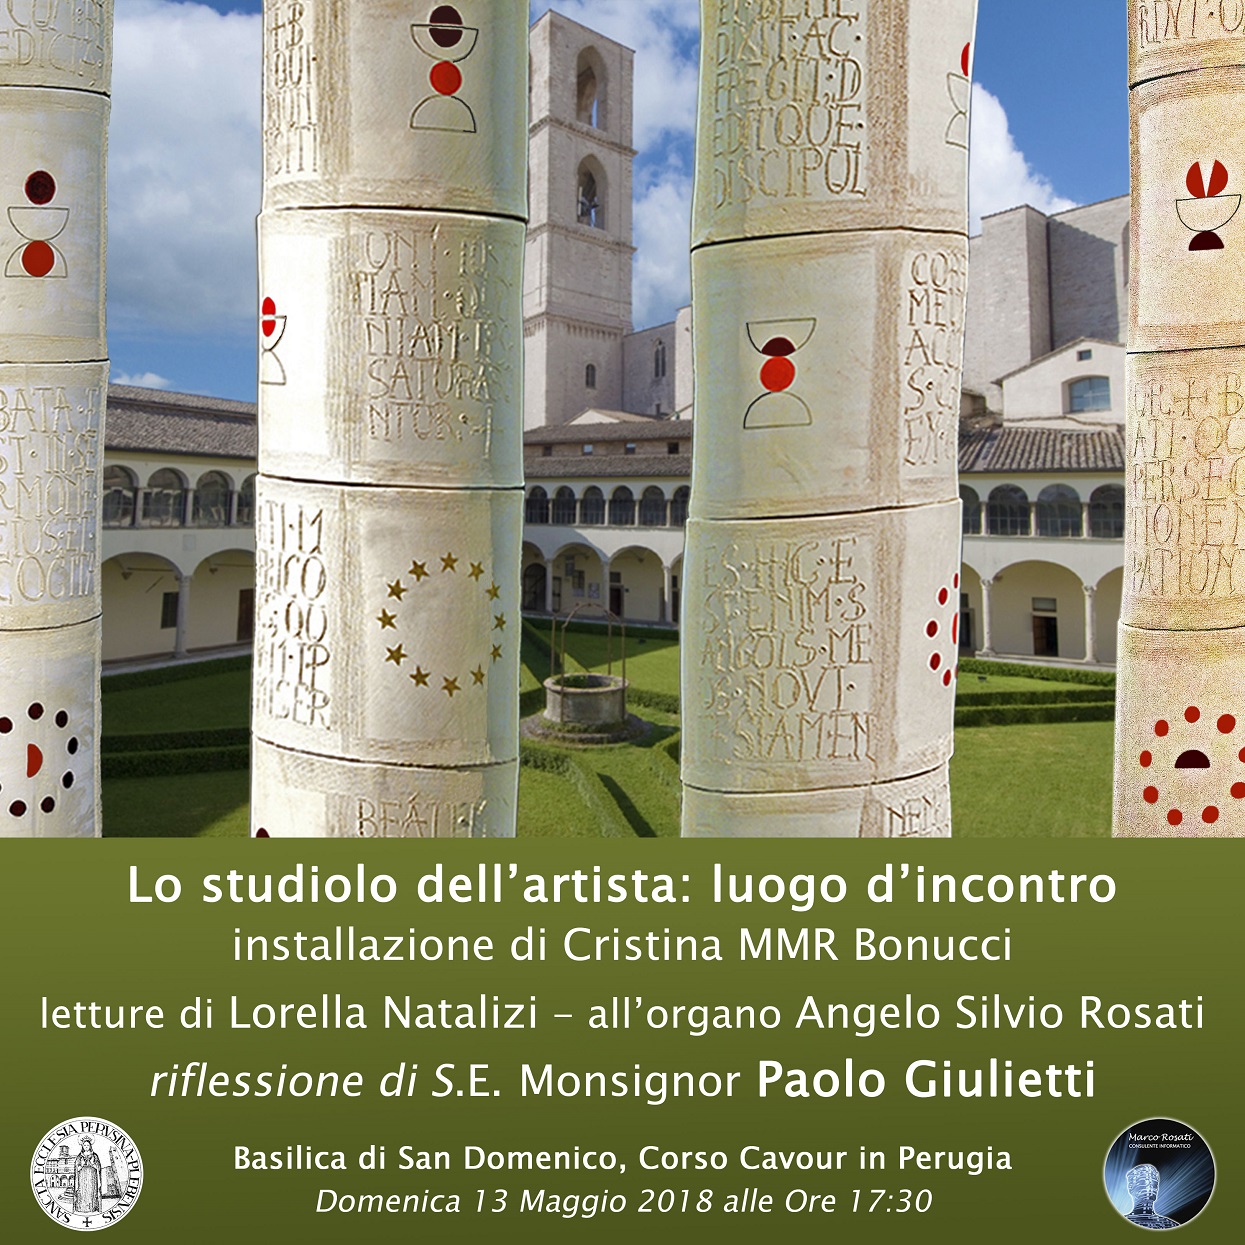 Cristina MMR Bonucci artista - Scultura alla Basilica di San Domenico